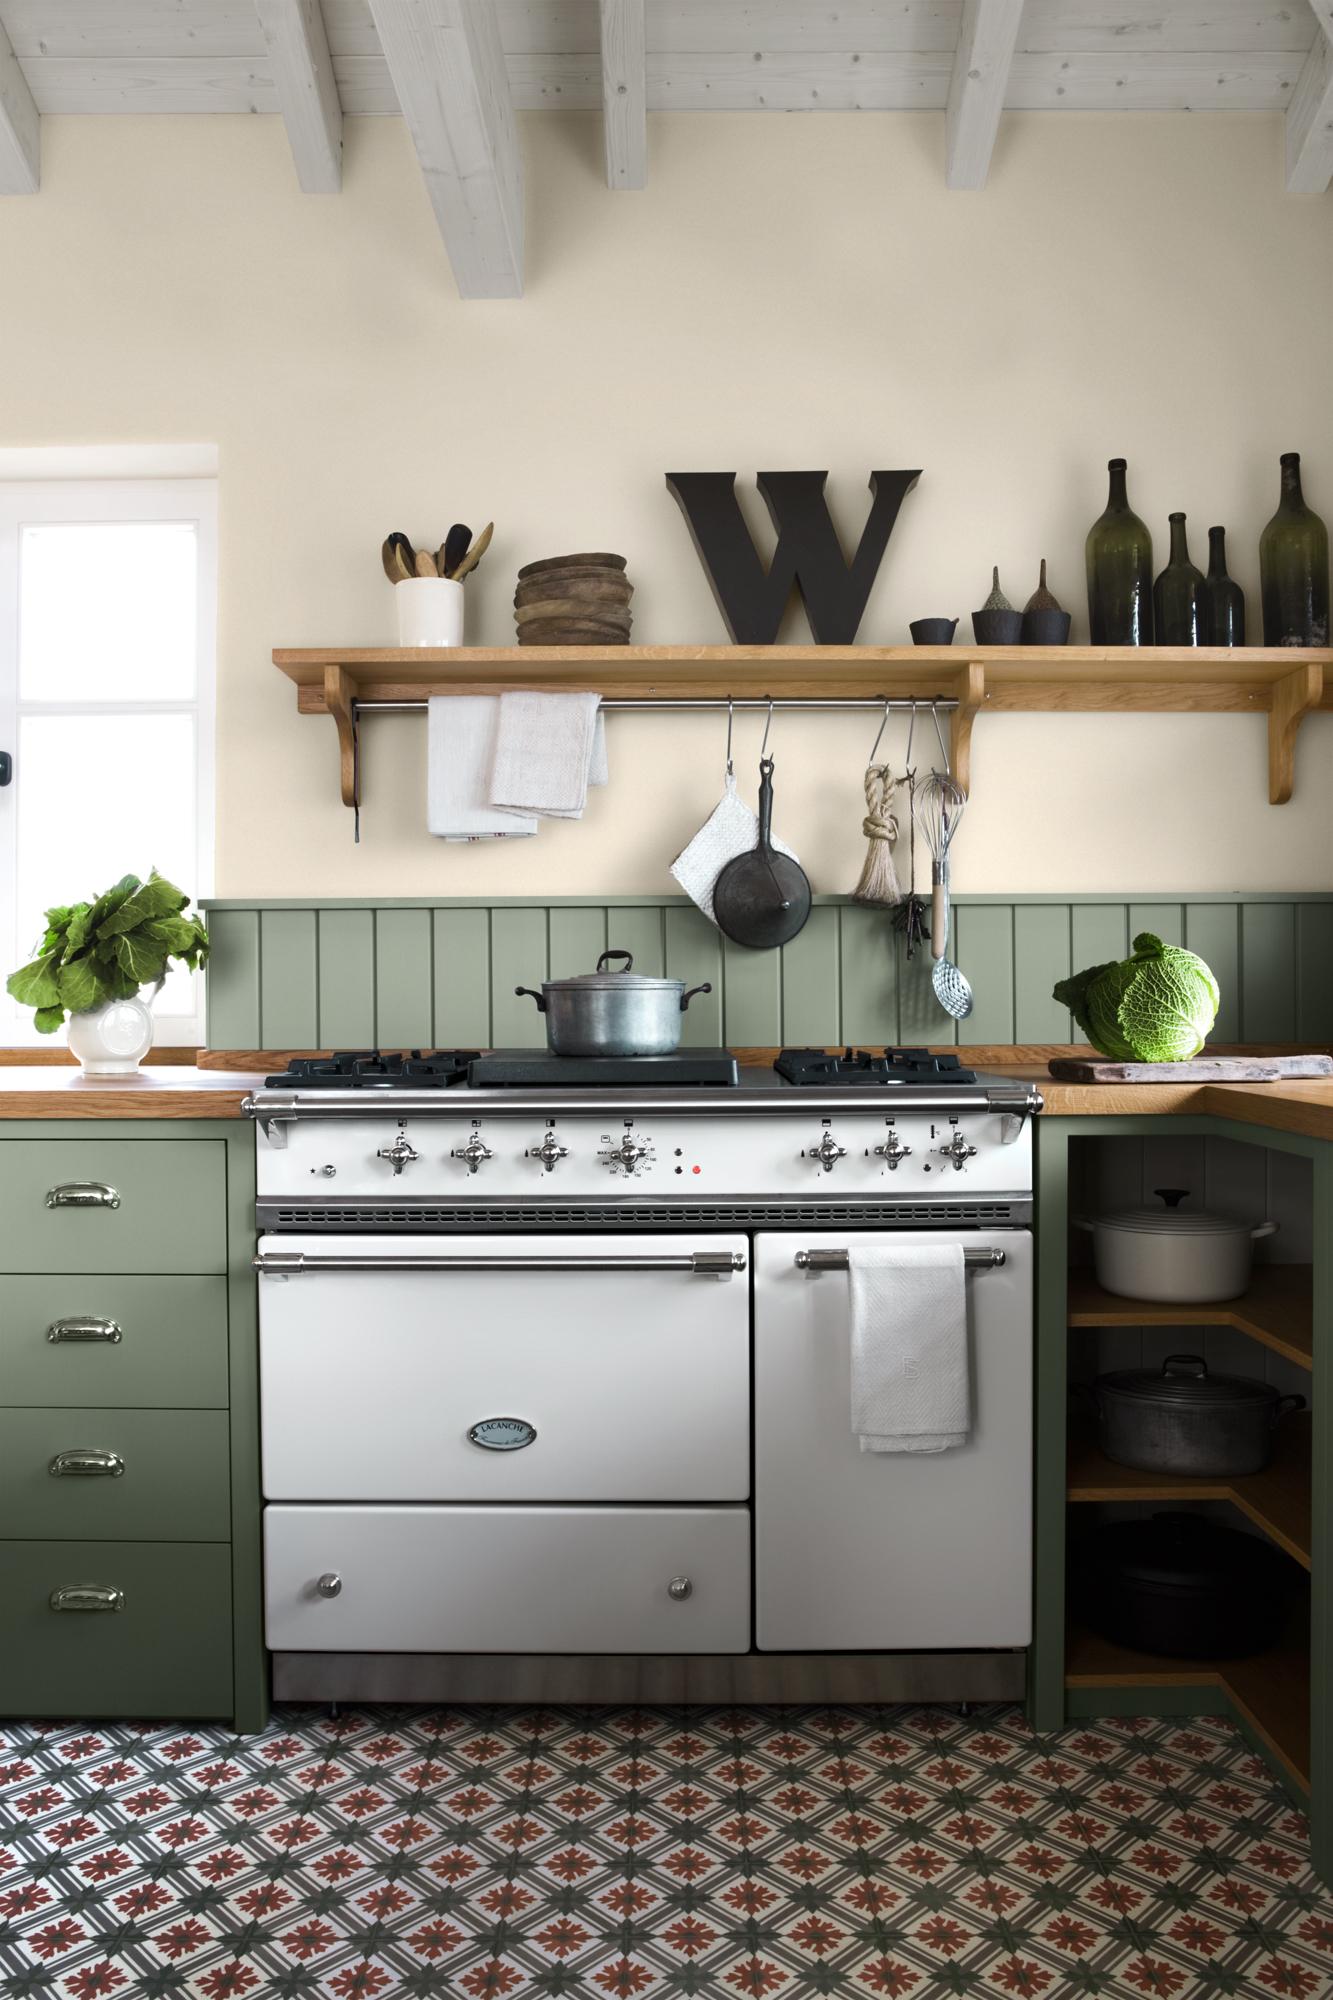 Küchengestaltung in Dunkelgrün #fliesen #weißeholzbalkendecke #buntefliesen #wandboard #küchengestaltung #küchenfliesen ©VIA Woodworker